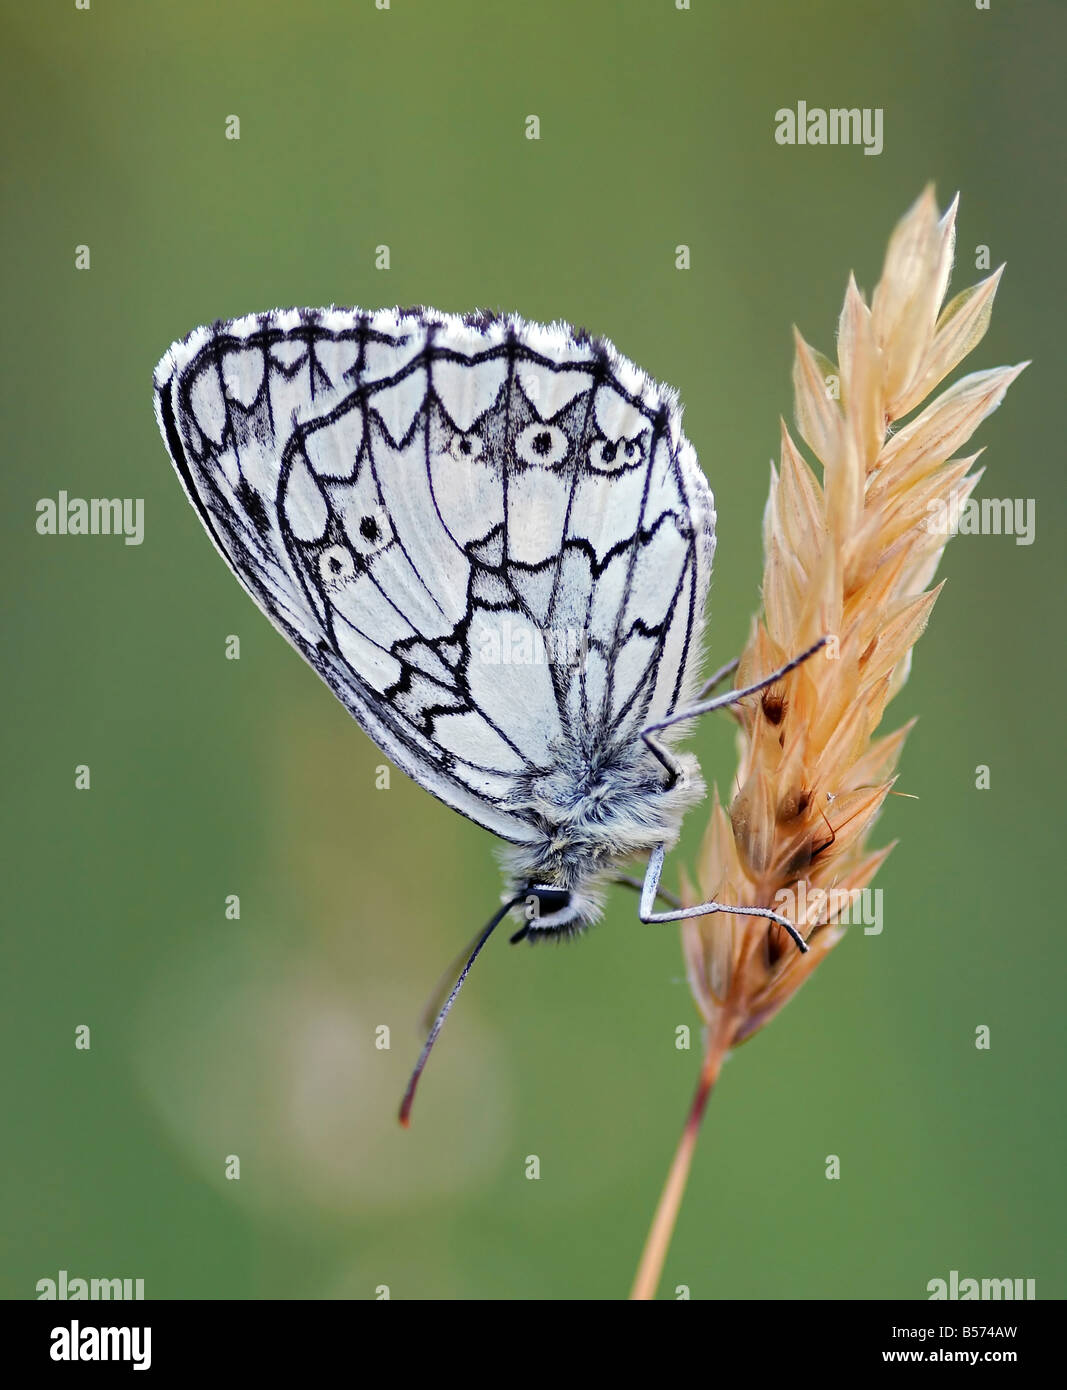 Dettaglio - close-up - dell'satyrid butterfly - Prato brown Foto Stock